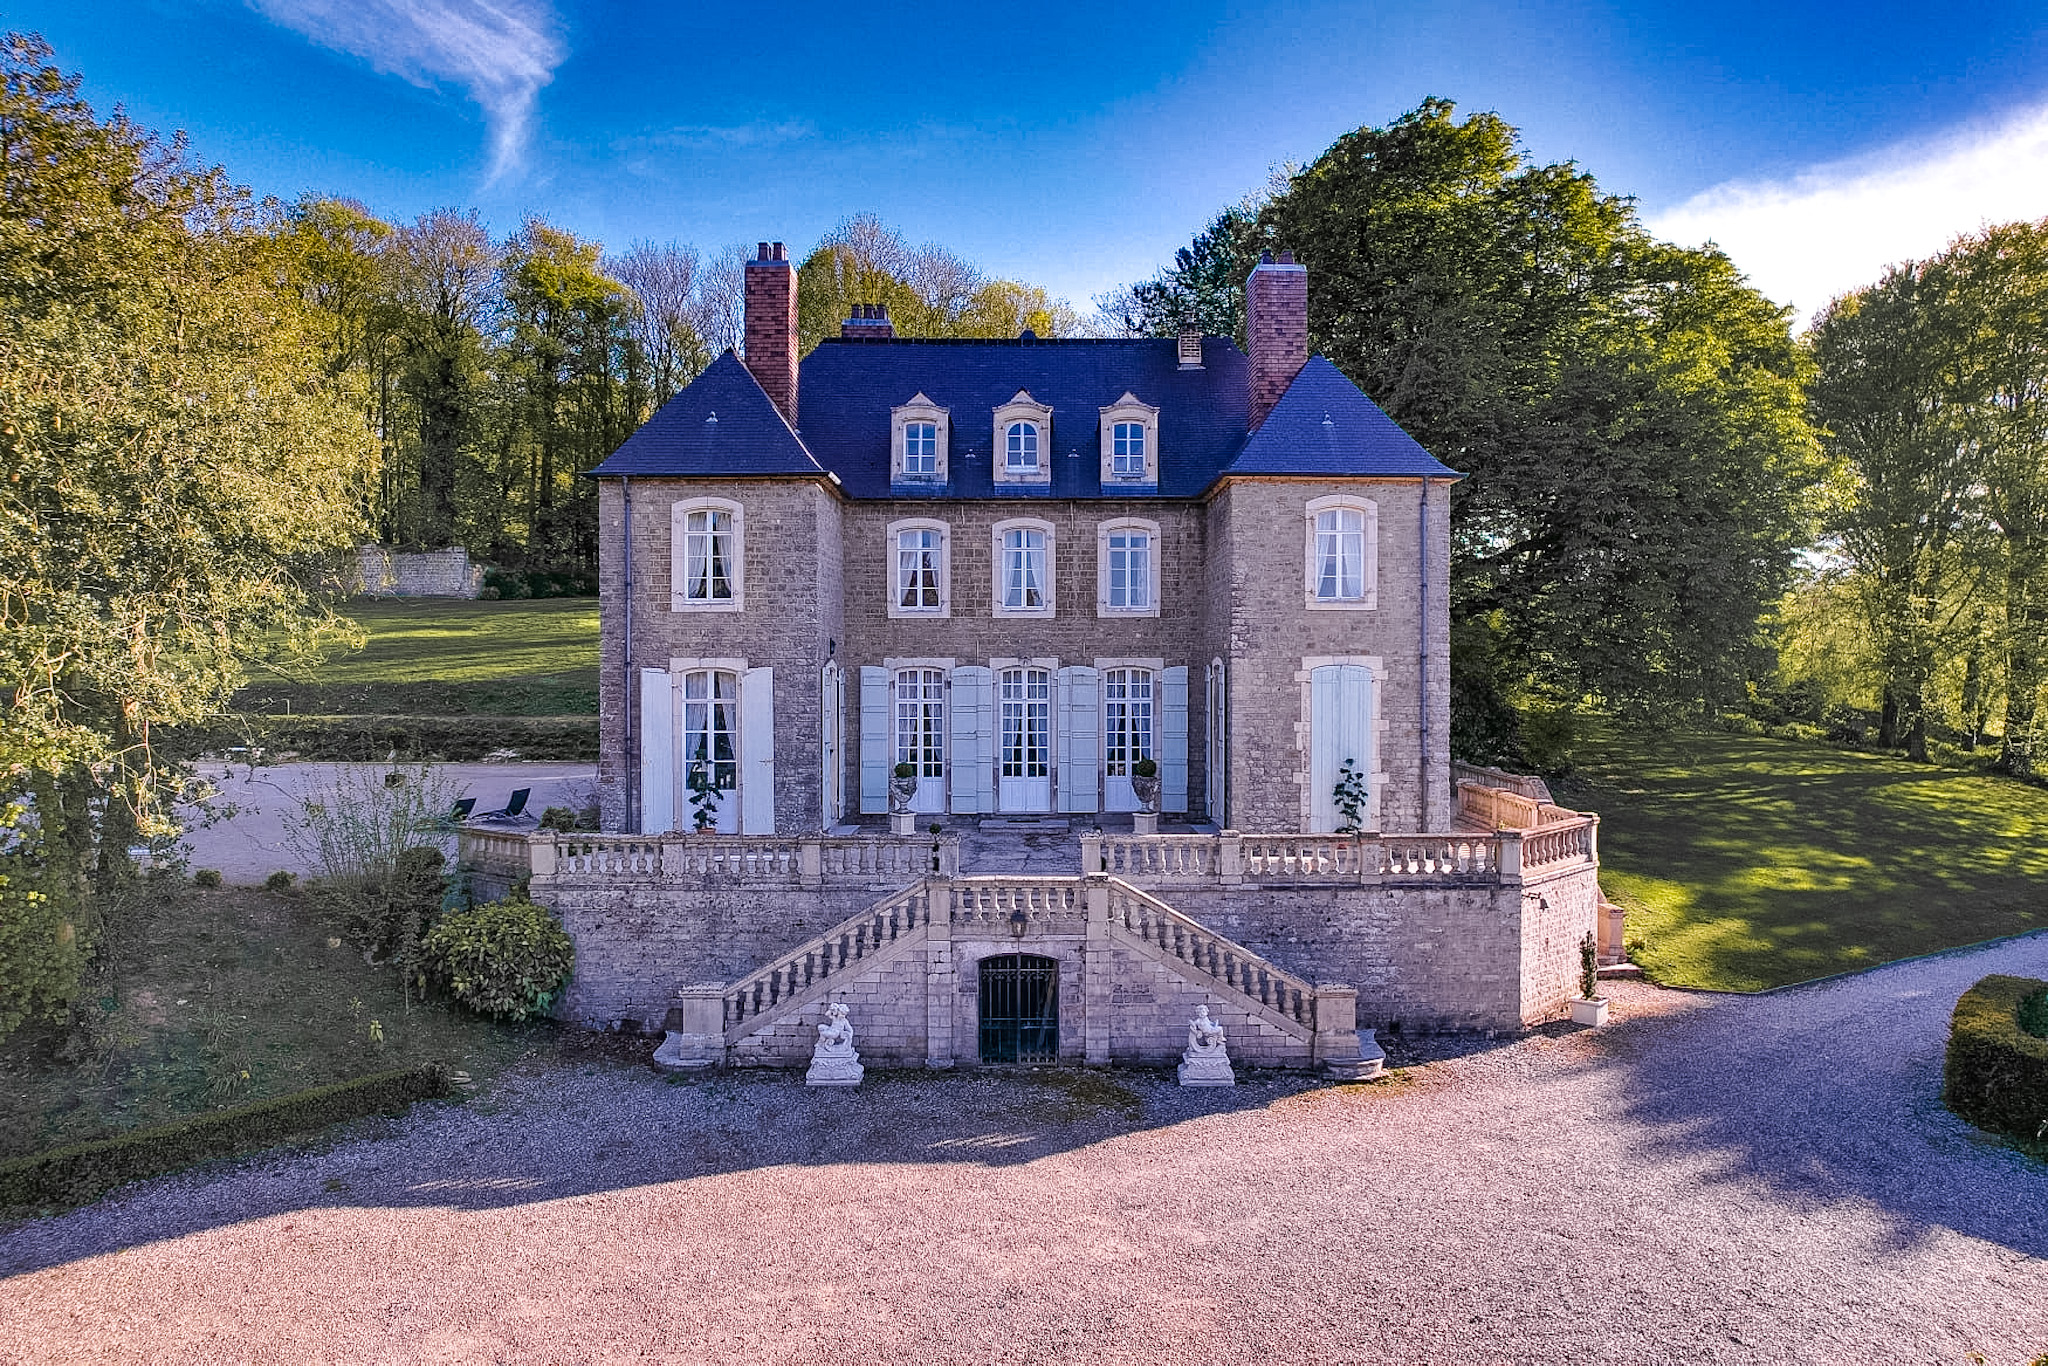 Château du Denacre location Côte d'Opale Boulogne-sur-Mer